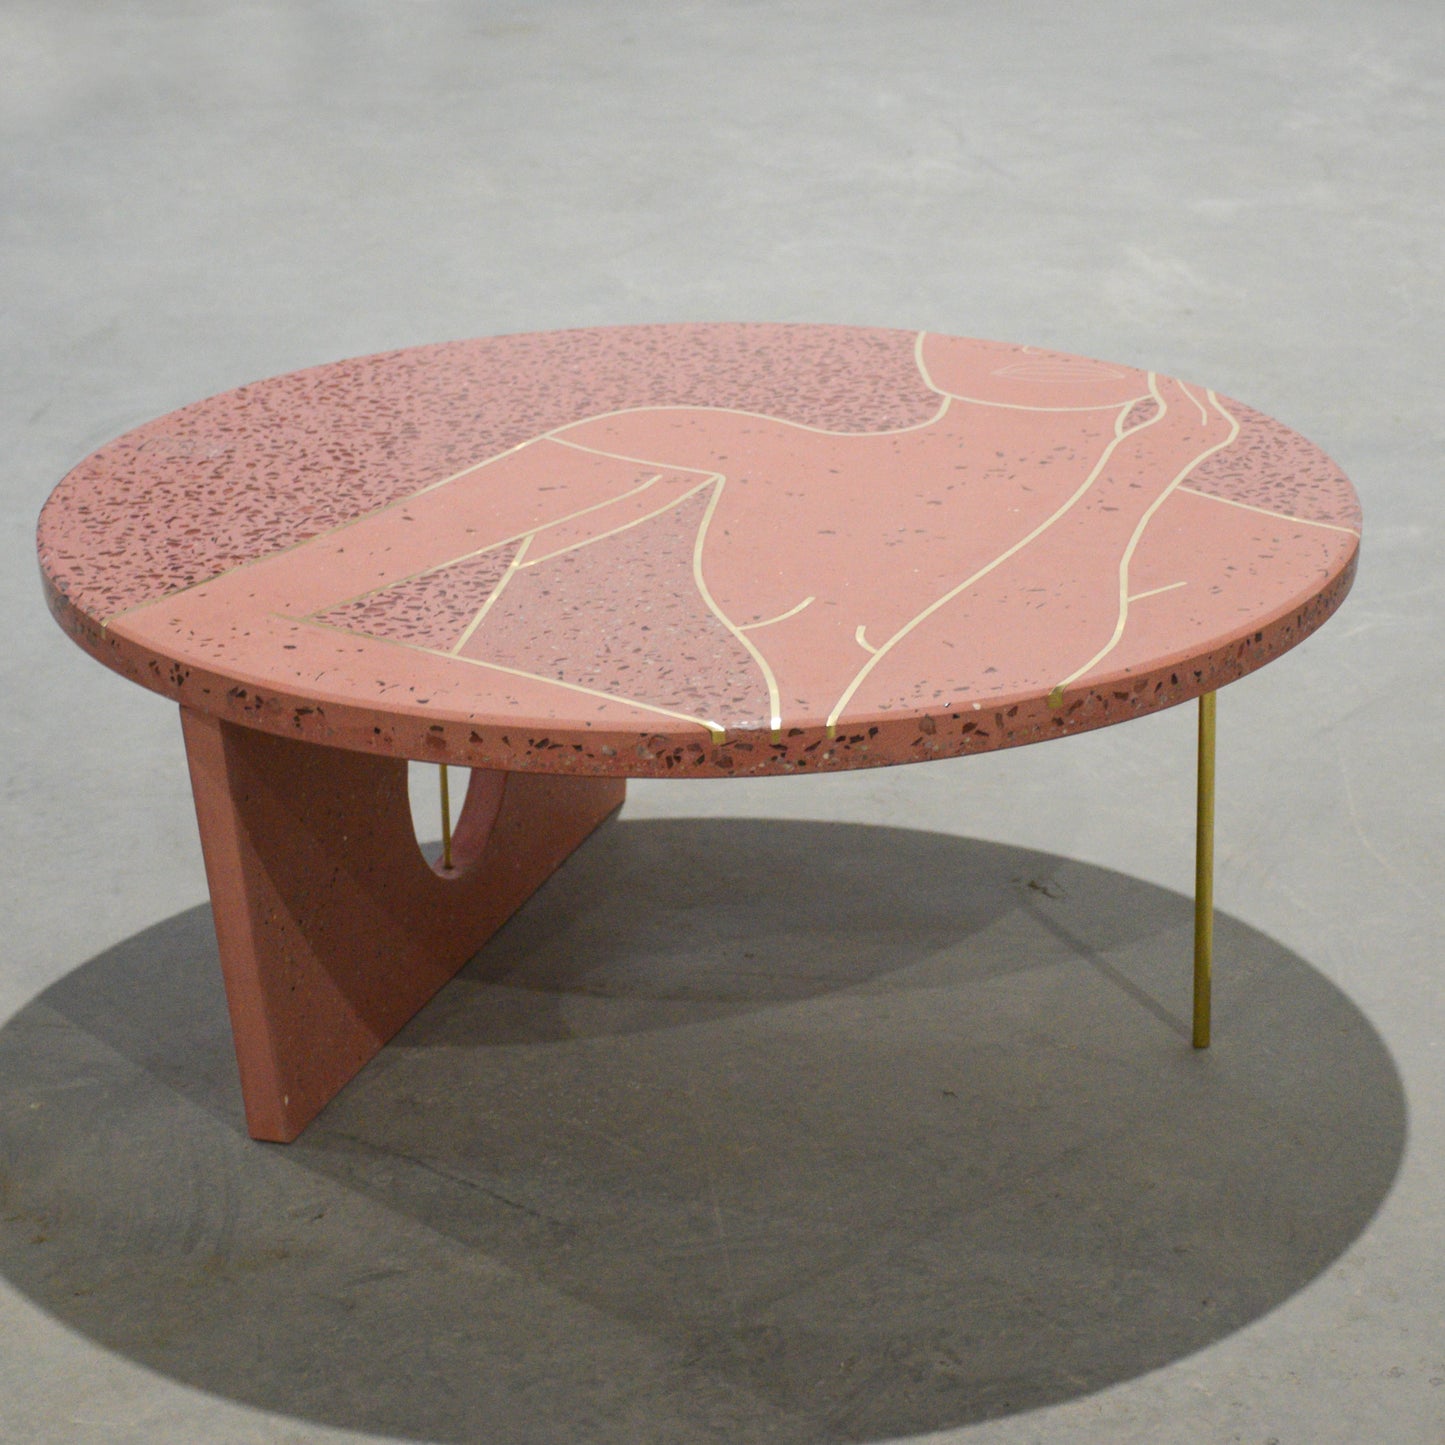 Réz és vörösréz intarzia-terrazzo dohányzó asztal 75cm